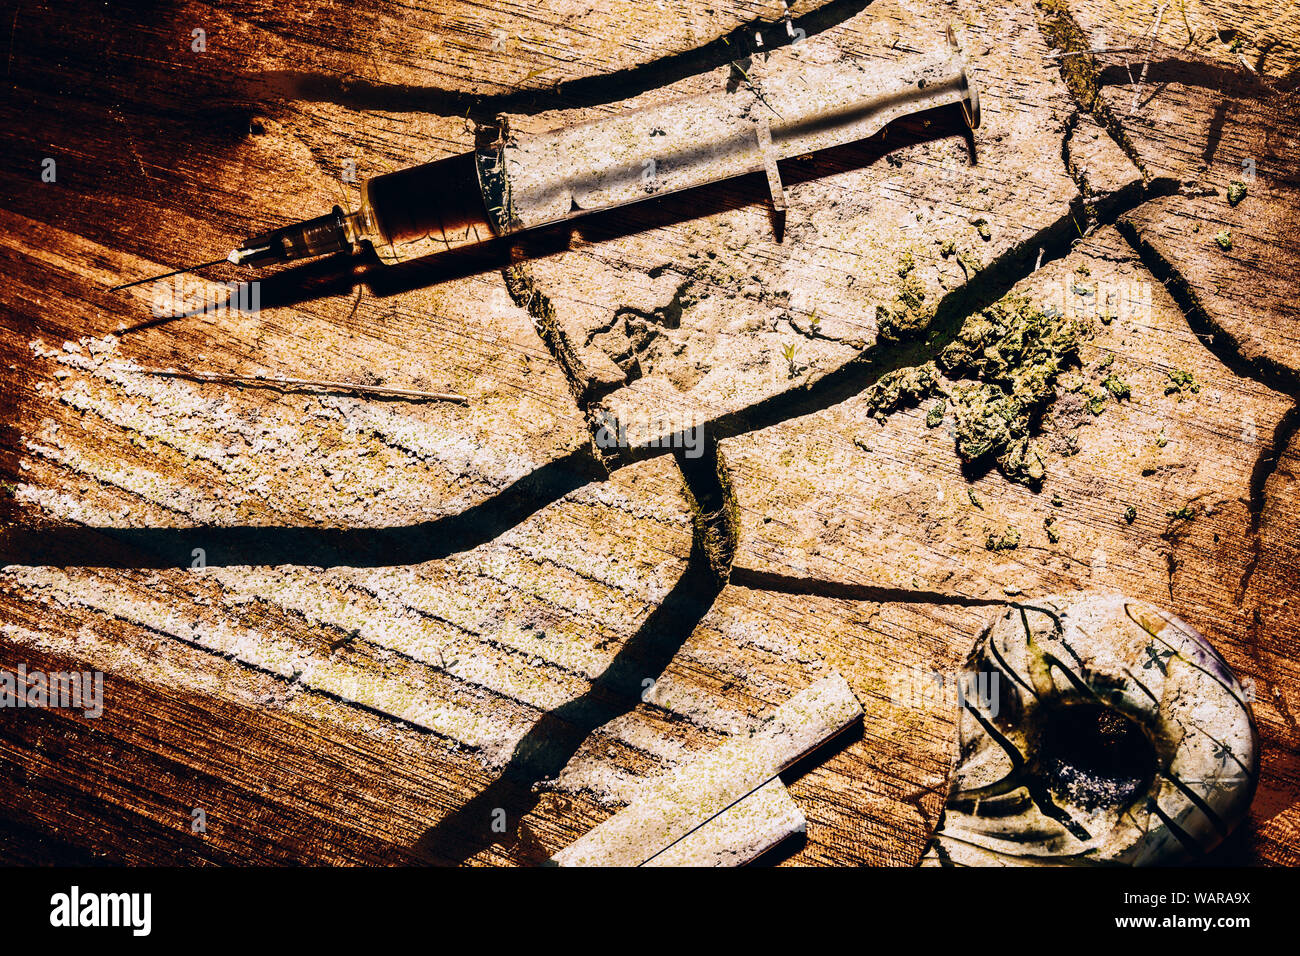 Mischung von harten und weichen Drogen mit Rissen auf einem Holzbrett überlagert - Neigung Konzept Stockfoto